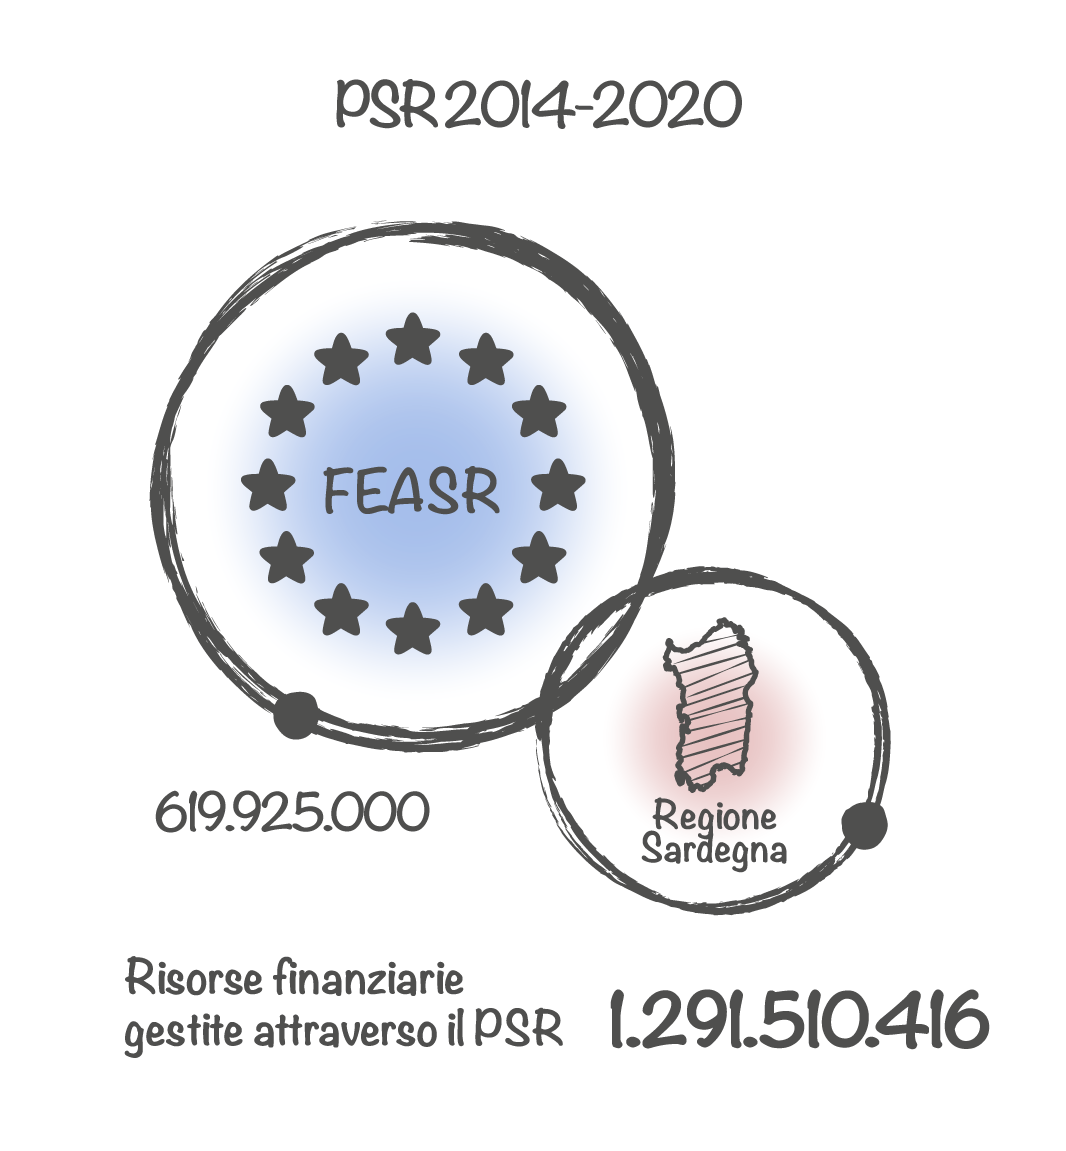 PSR 2014-2020 - Risorse finanziare gestite attraverso il PSR € 1291510416